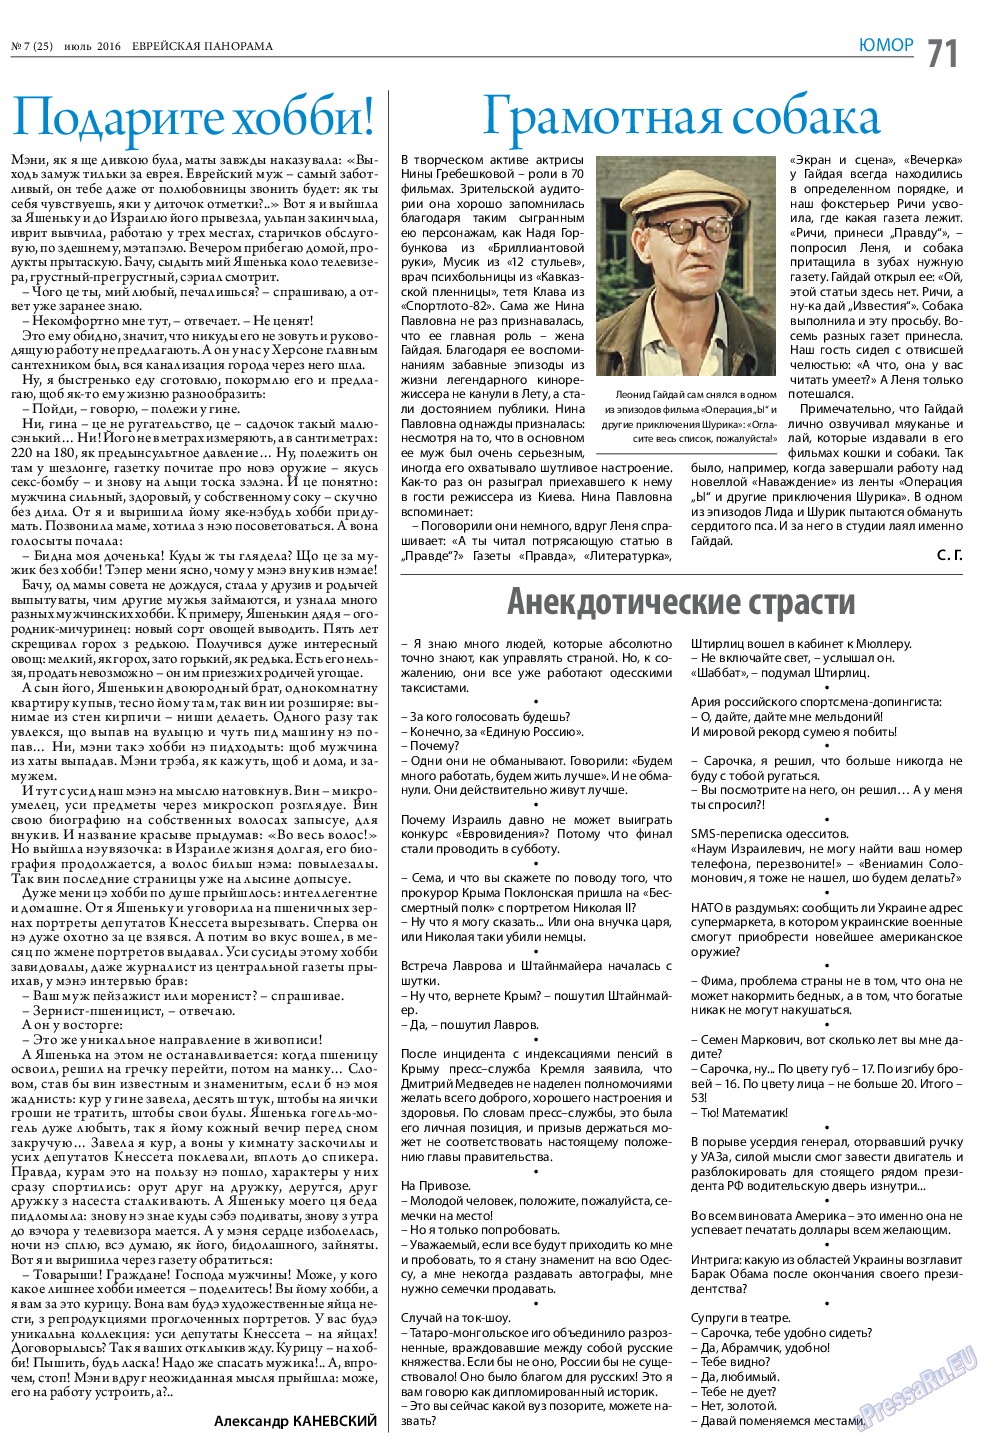 Еврейская панорама (газета). 2016 год, номер 7, стр. 71